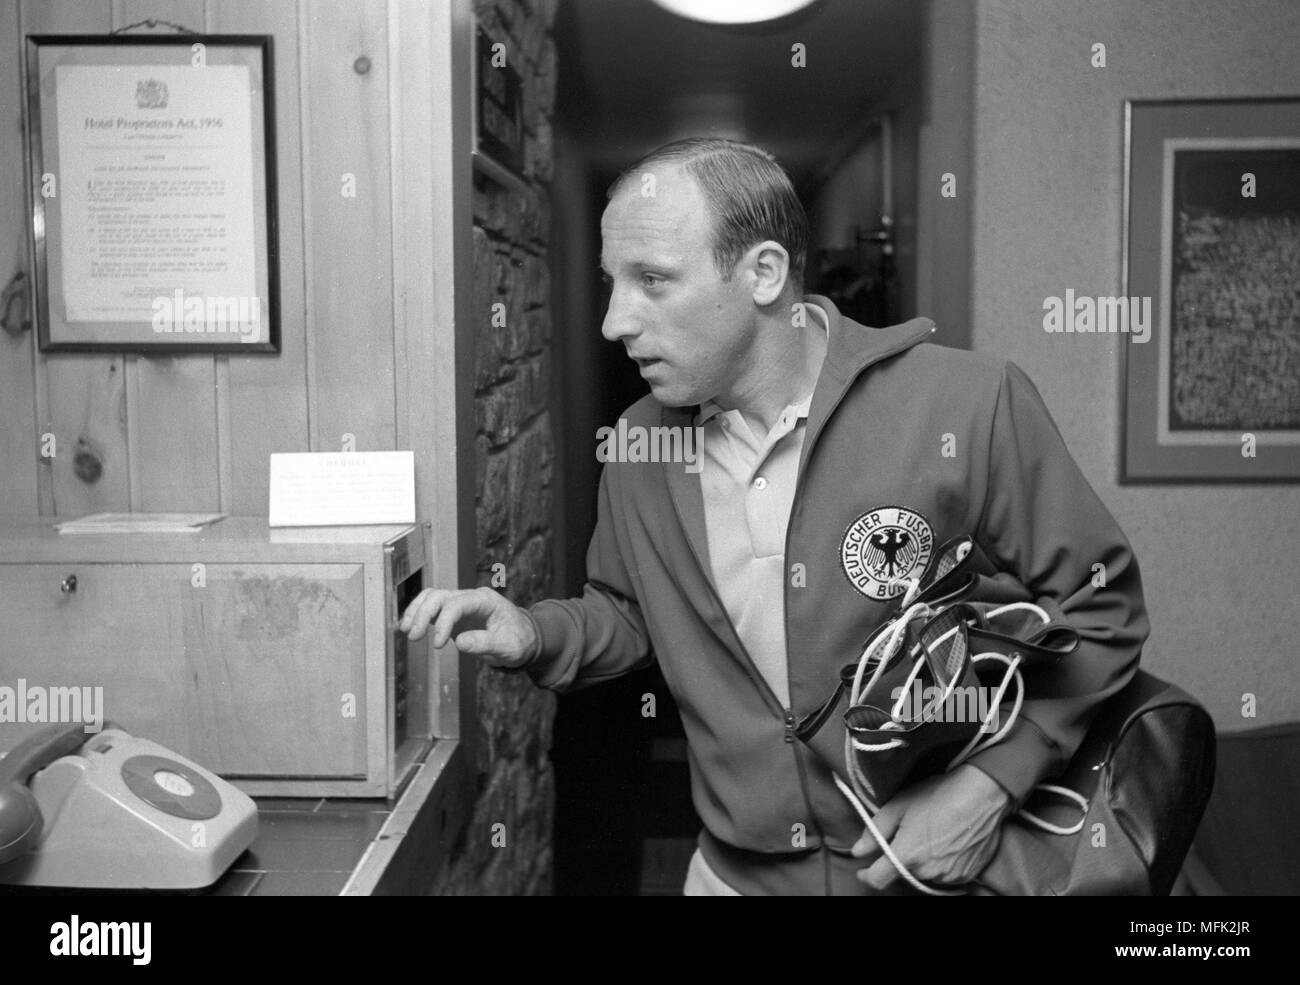 Coupe du Monde de Football 1966 - Uwe Virginia Afflerbach met une lettre dans la boîte aux lettres de l'hôtel. Dans le monde d'utilisation | Banque D'Images